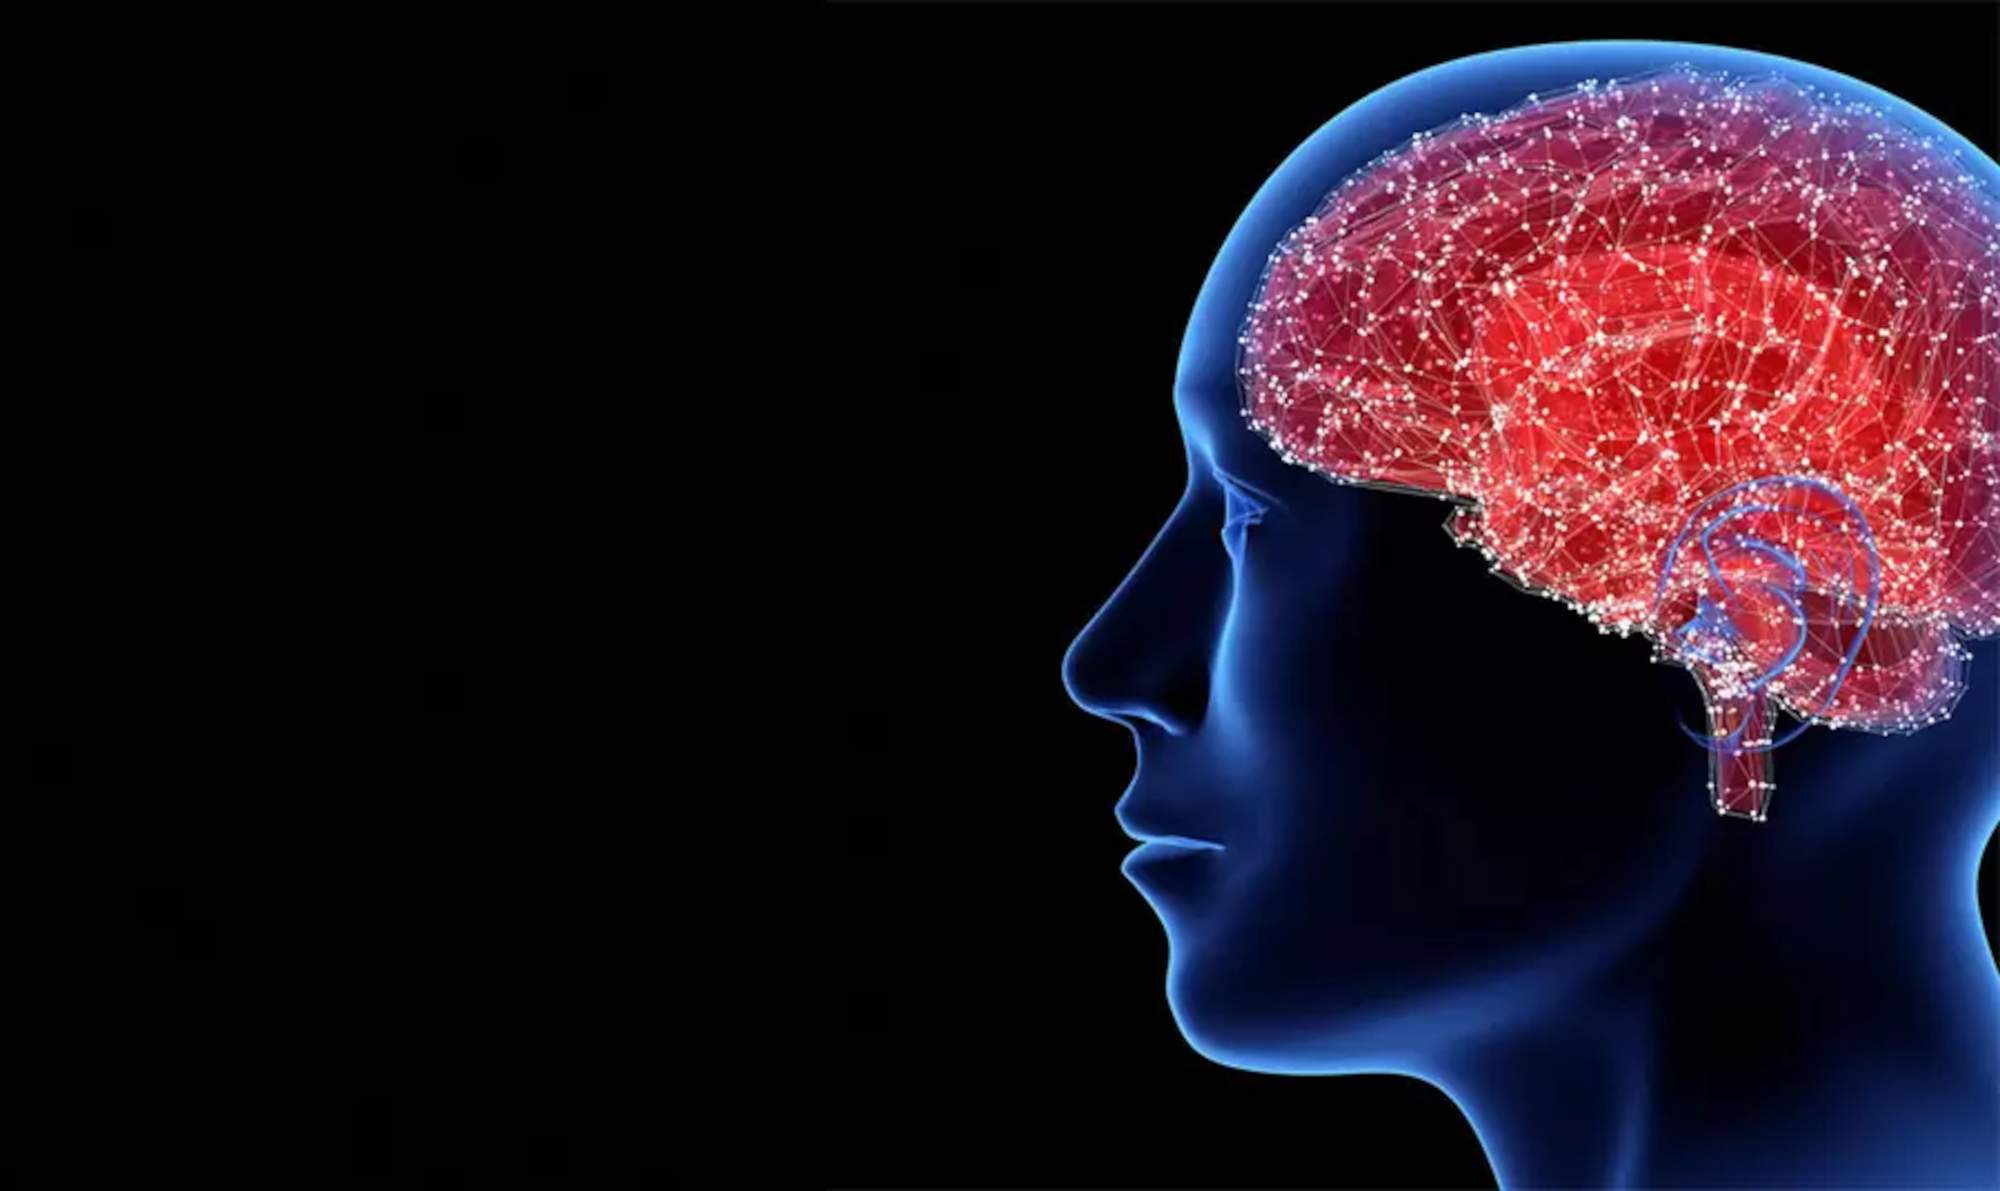 Ψηφιακή απεικόνιση του ανθρώπινου κεφαλιού, όπου διακρίνεται ο εγκέφαλος